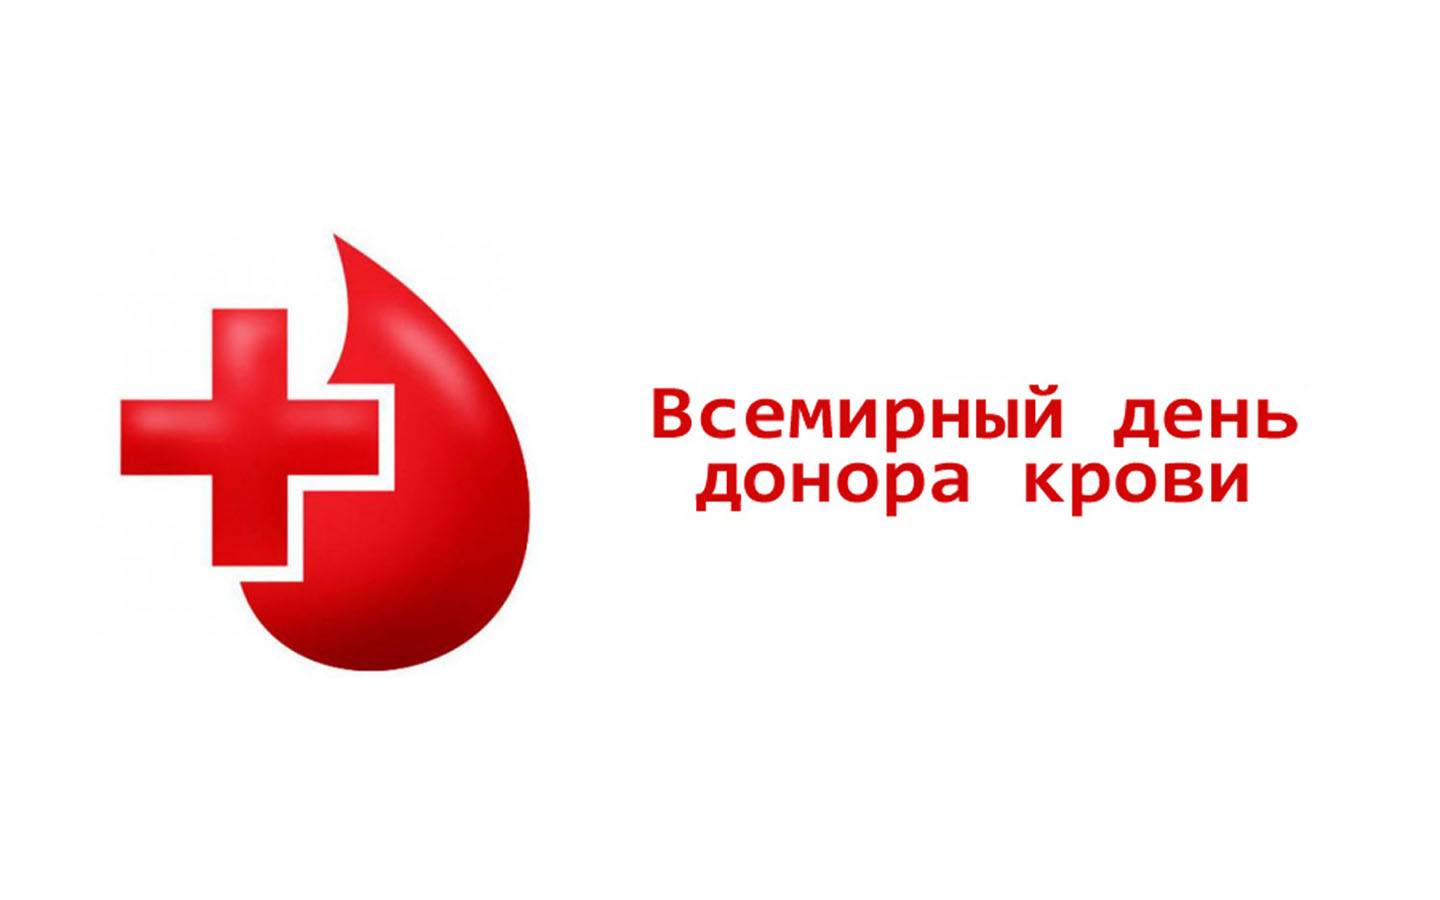 Всемирный день донора крови 14 июня: история, как отмечают, факты